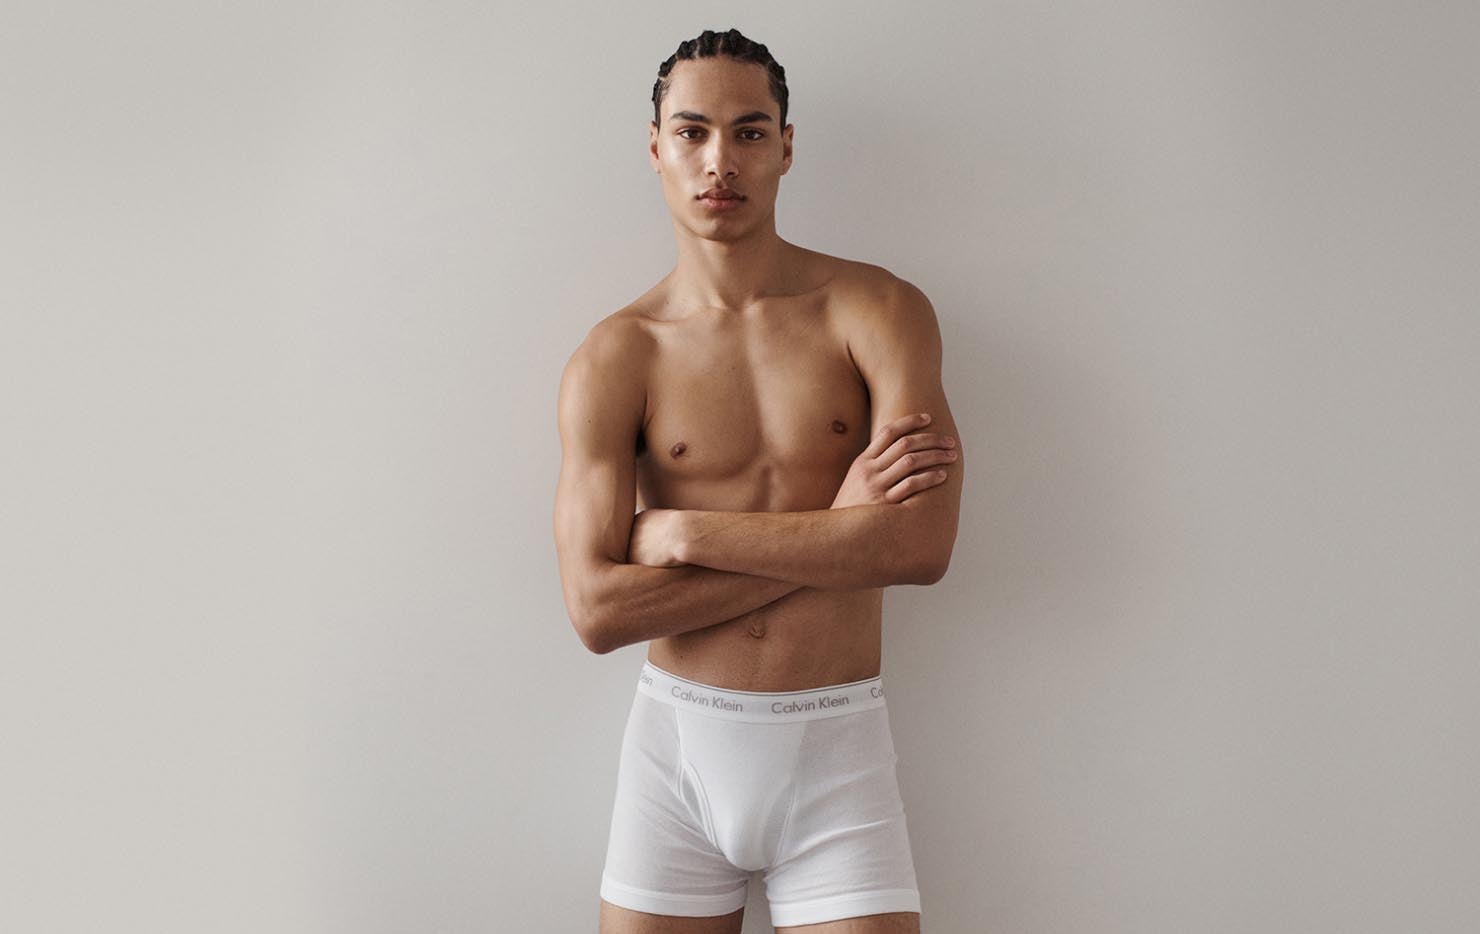 Lycra Cotton Plain Calvin Klein Underwear, Type: Boxer Briefs at Rs 390/set  in Etawah